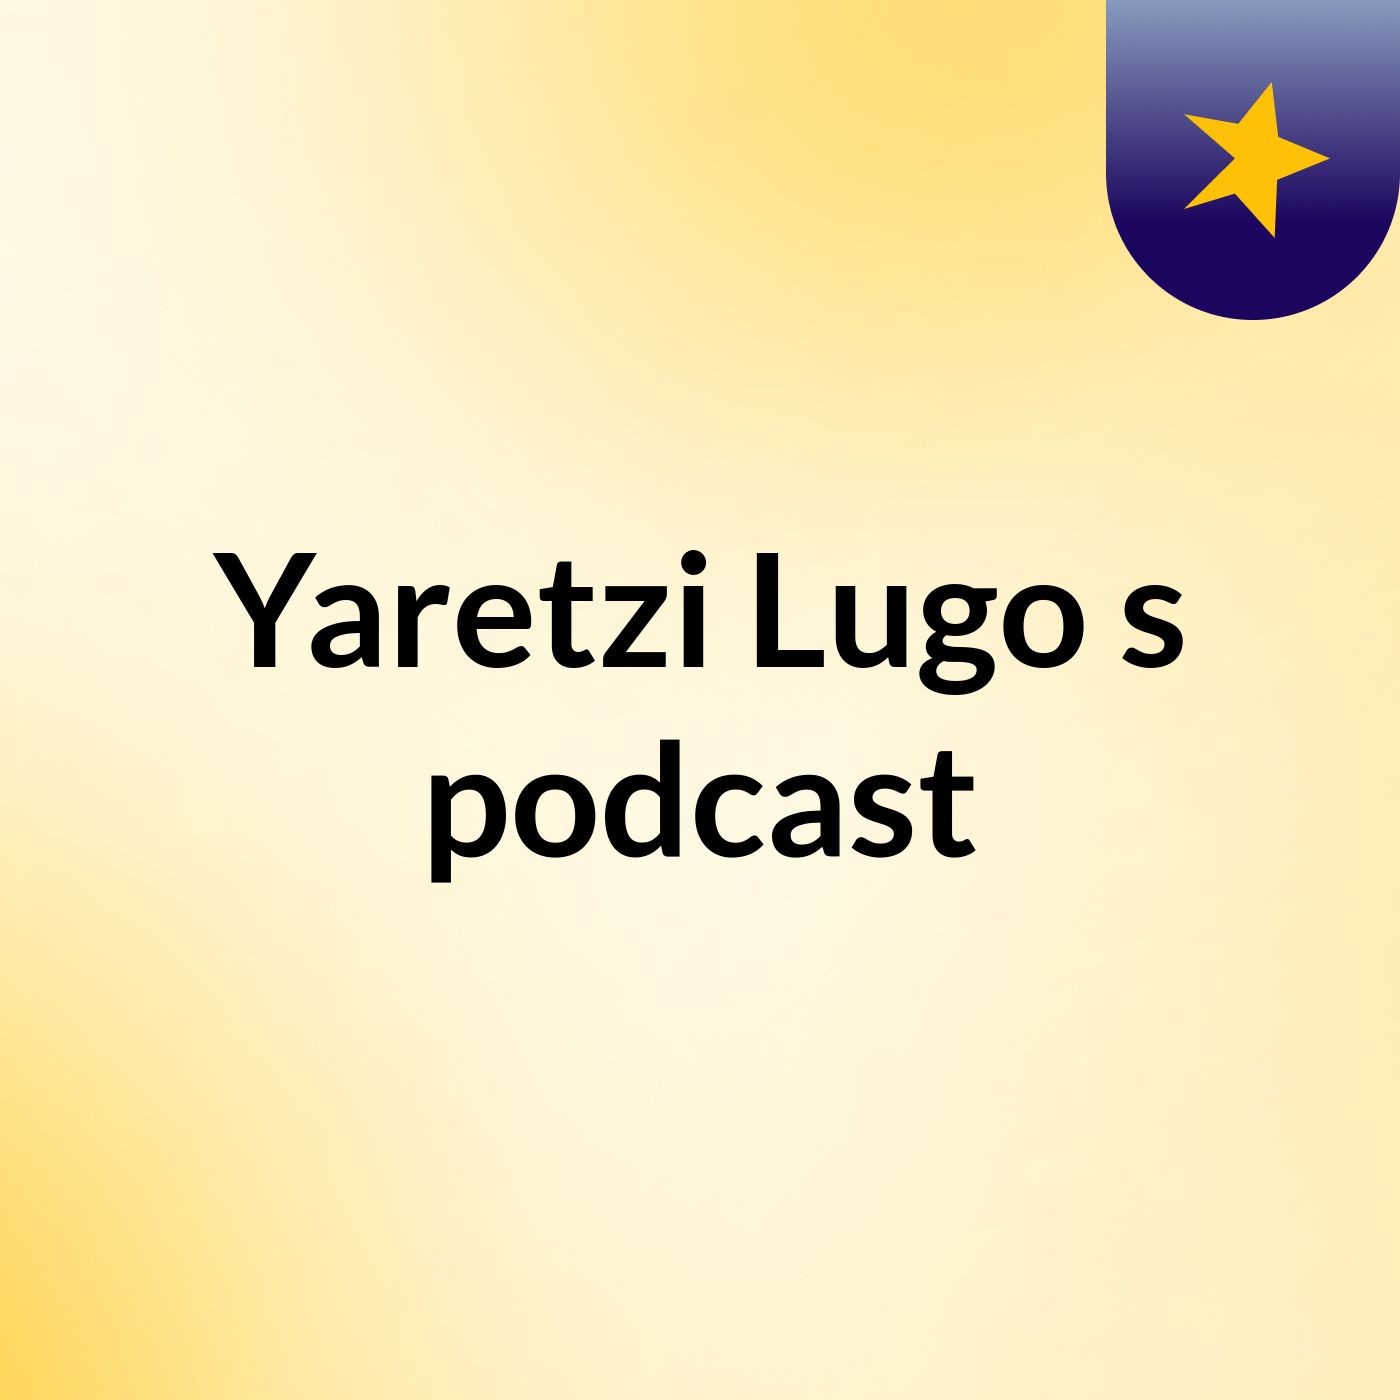 Yaretzi Lugo's podcast